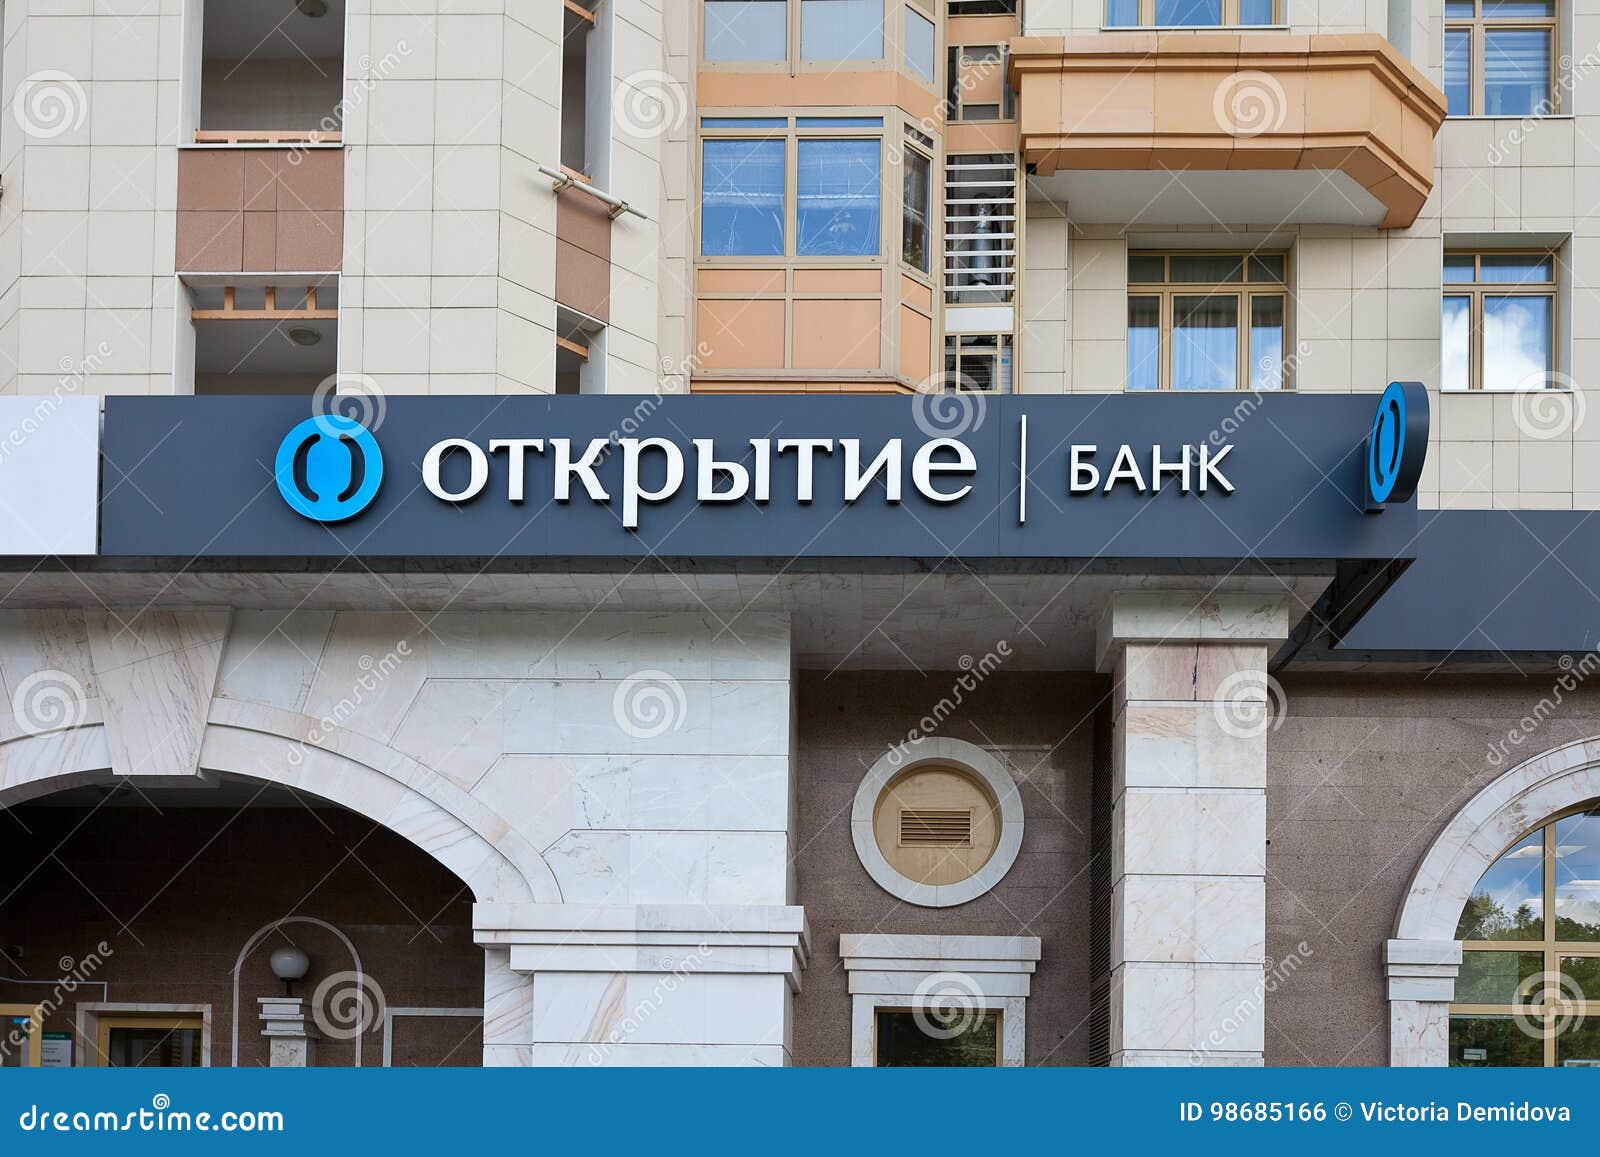 Банк открытие огрн. Офис банка открытие. Банк открытие Москва. Банк открытие отделения в Москве. Офис банка открытие в Москве.